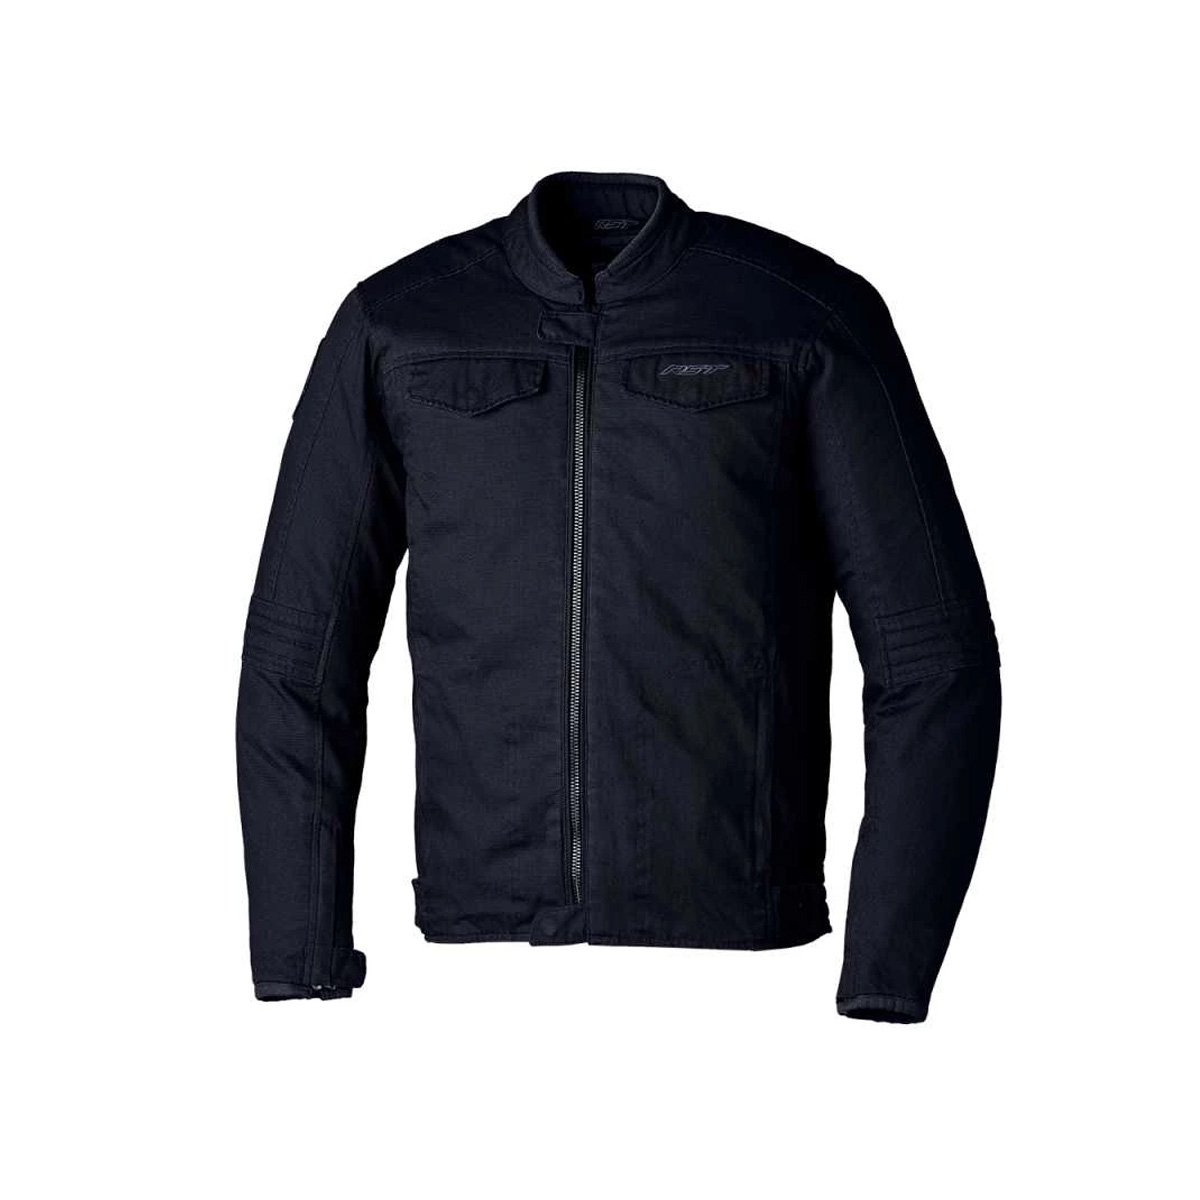 Image of RST IOM TT Crosby 2 CE Textile Jacket Men Black Size 48 EN